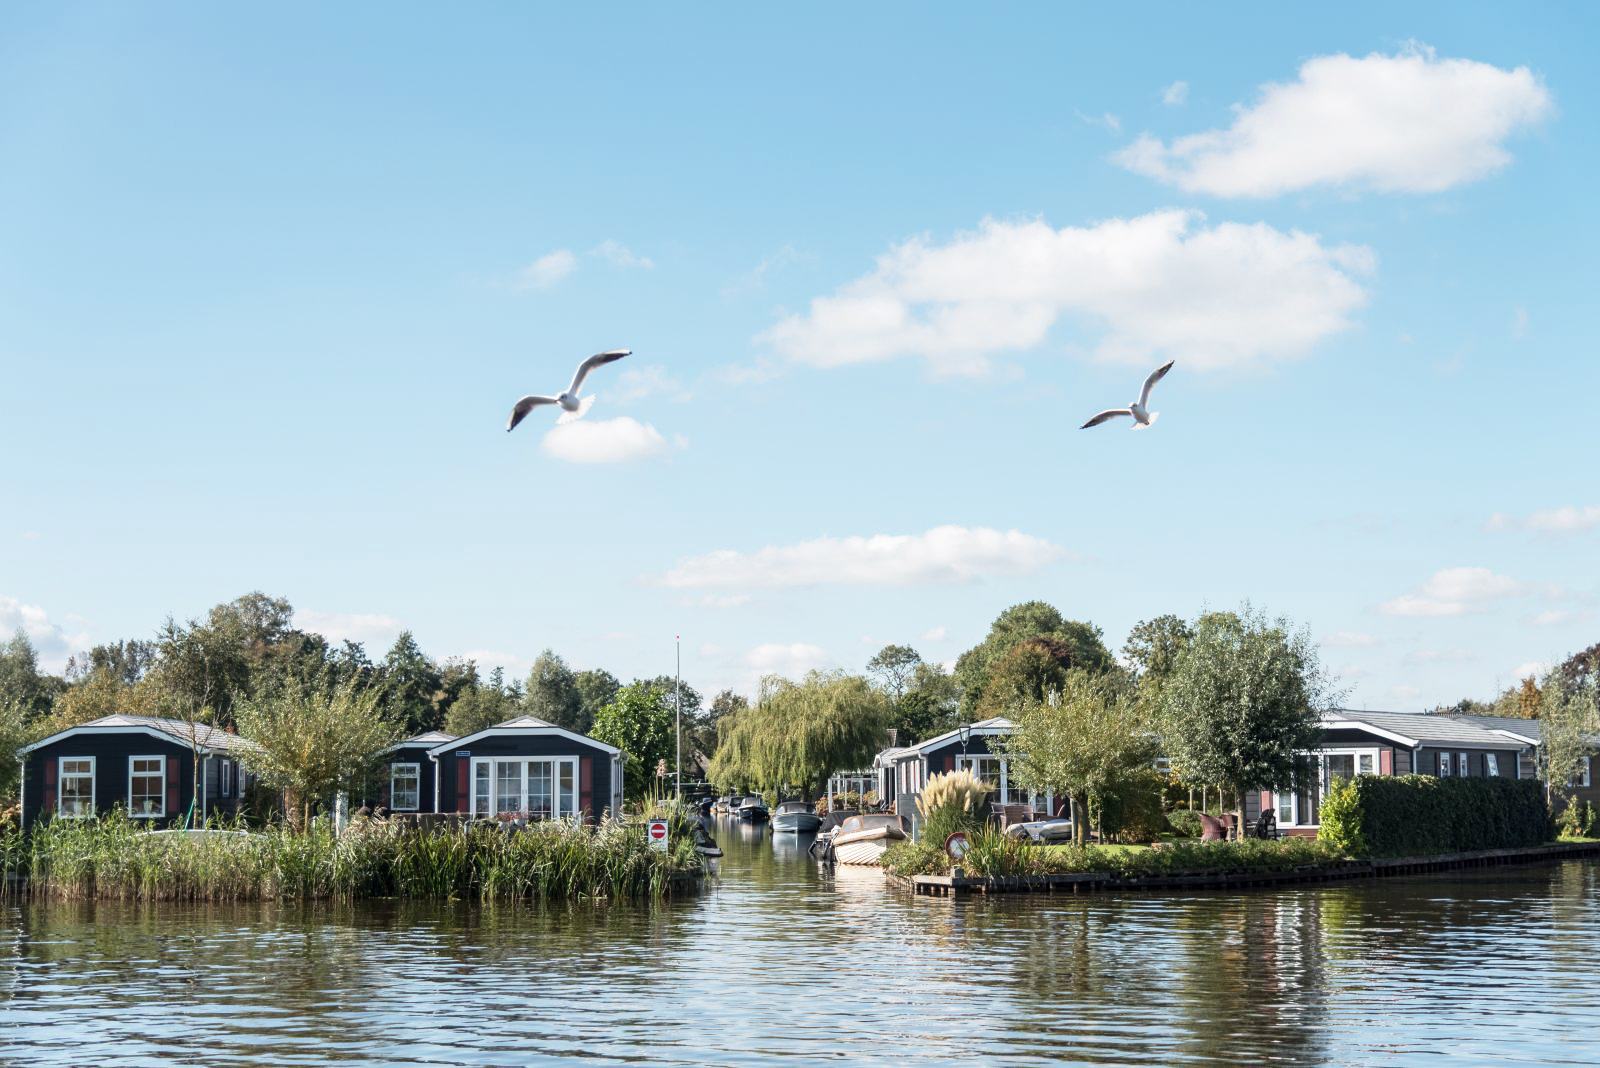 Holland von seiner schönsten Seite: Giethoorn in den Niederlanden